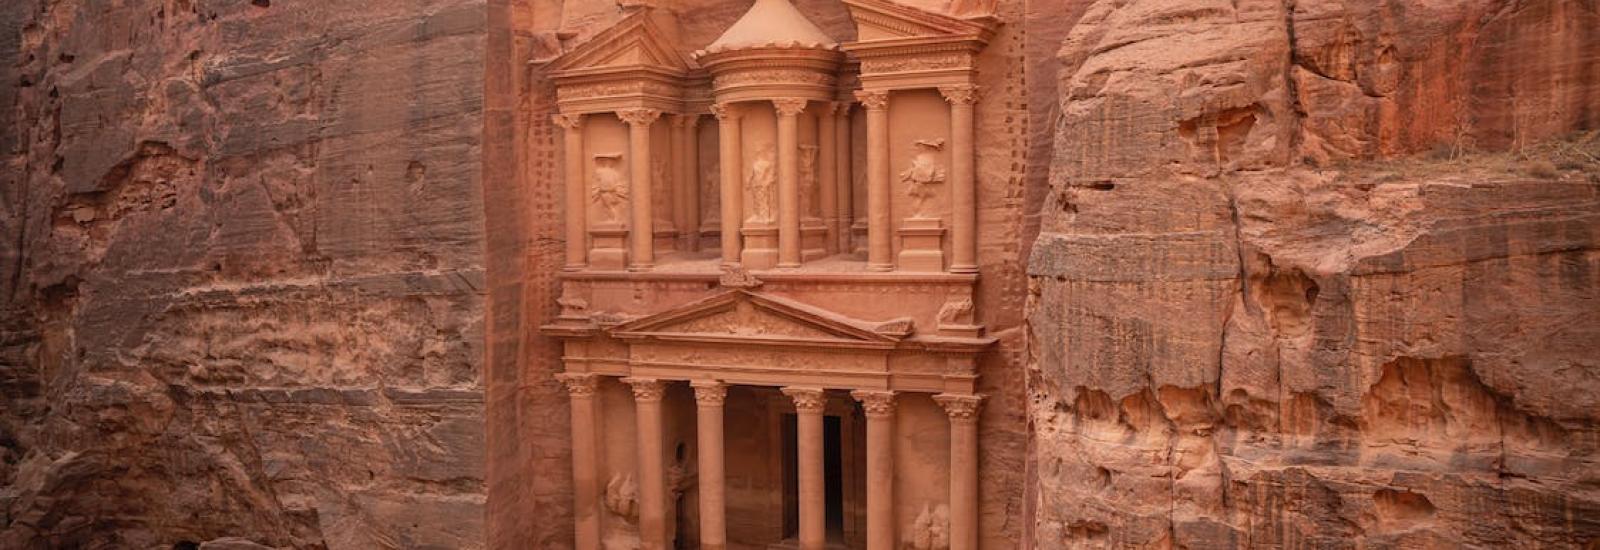 Tourists visiting Petra in Jordan.